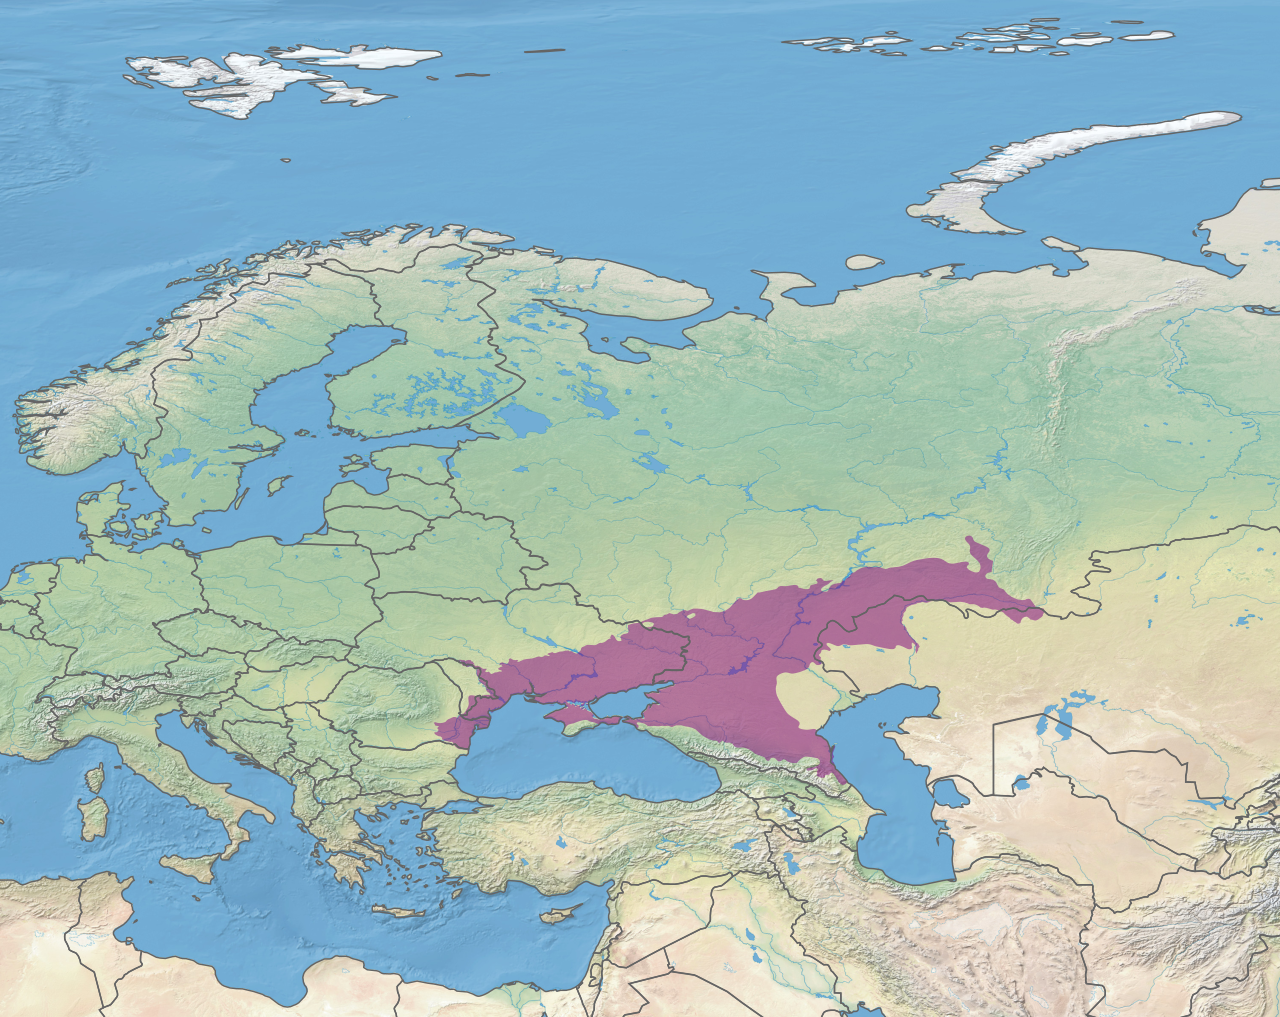 a bronzkori lovas nomádok terjesztették el a sclerosis multiplex genetikai faktorait észak-európában